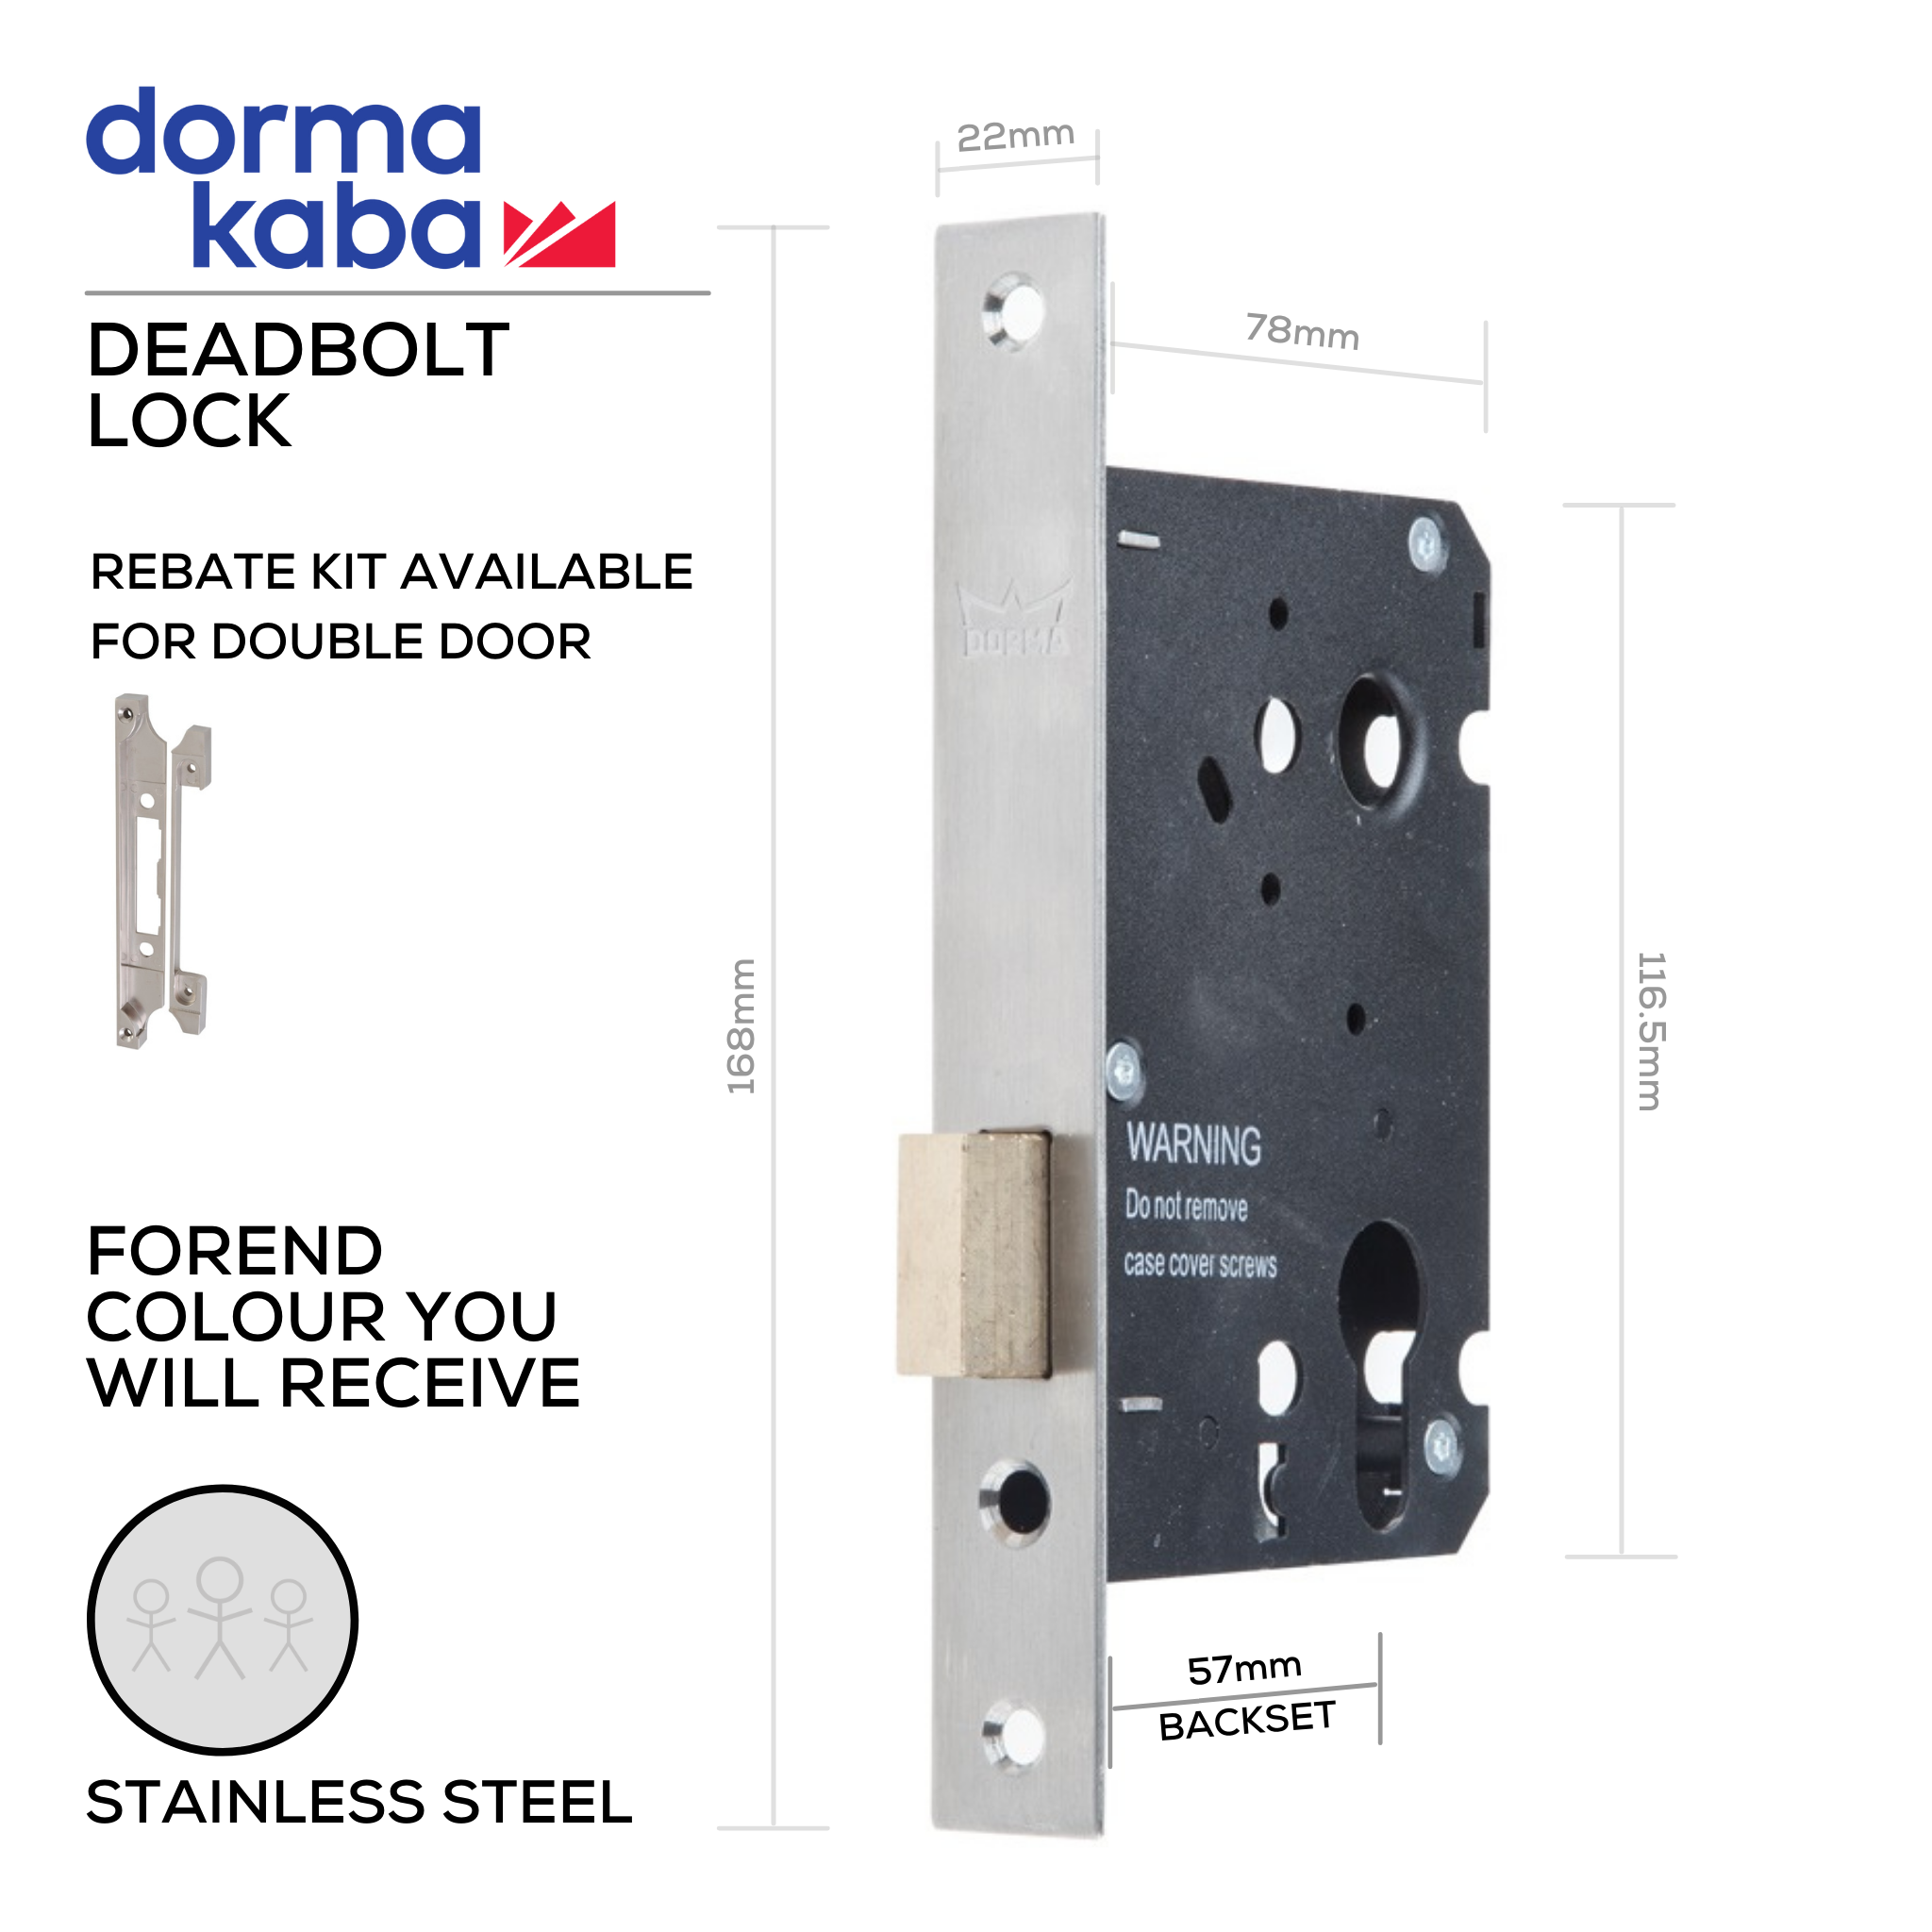 D037D Stainless Steel, Deadbolt Lock, Euro Cylinder, Excluding Cylinder, 57mm (Backset), Stainless Steel, DORMAKABA